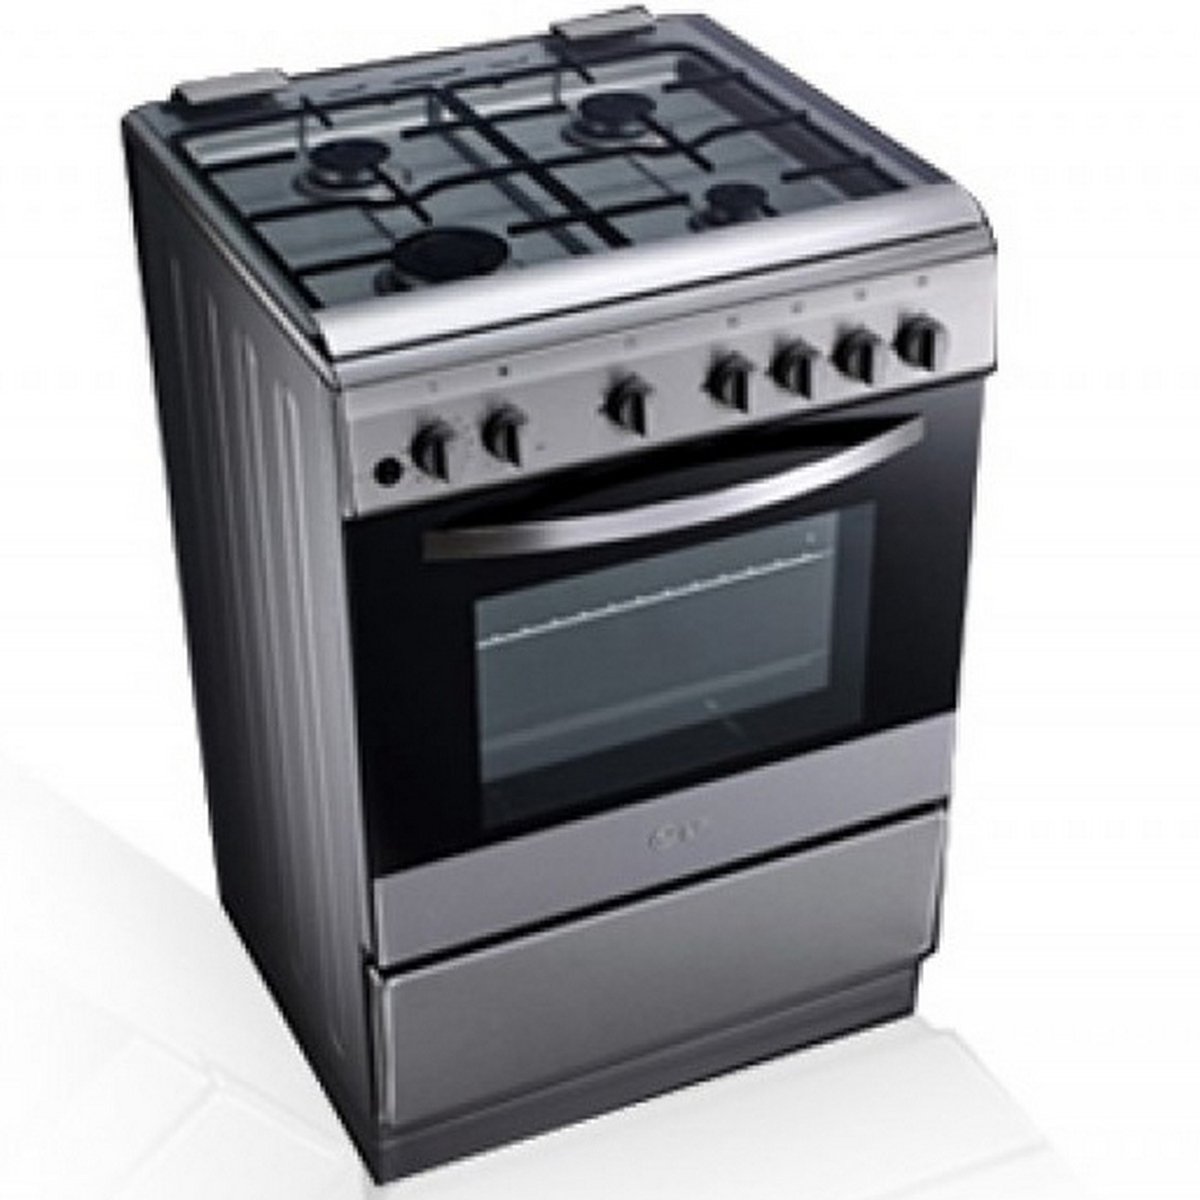 LG Cooking Range LF68V00S 60x60 4Burner